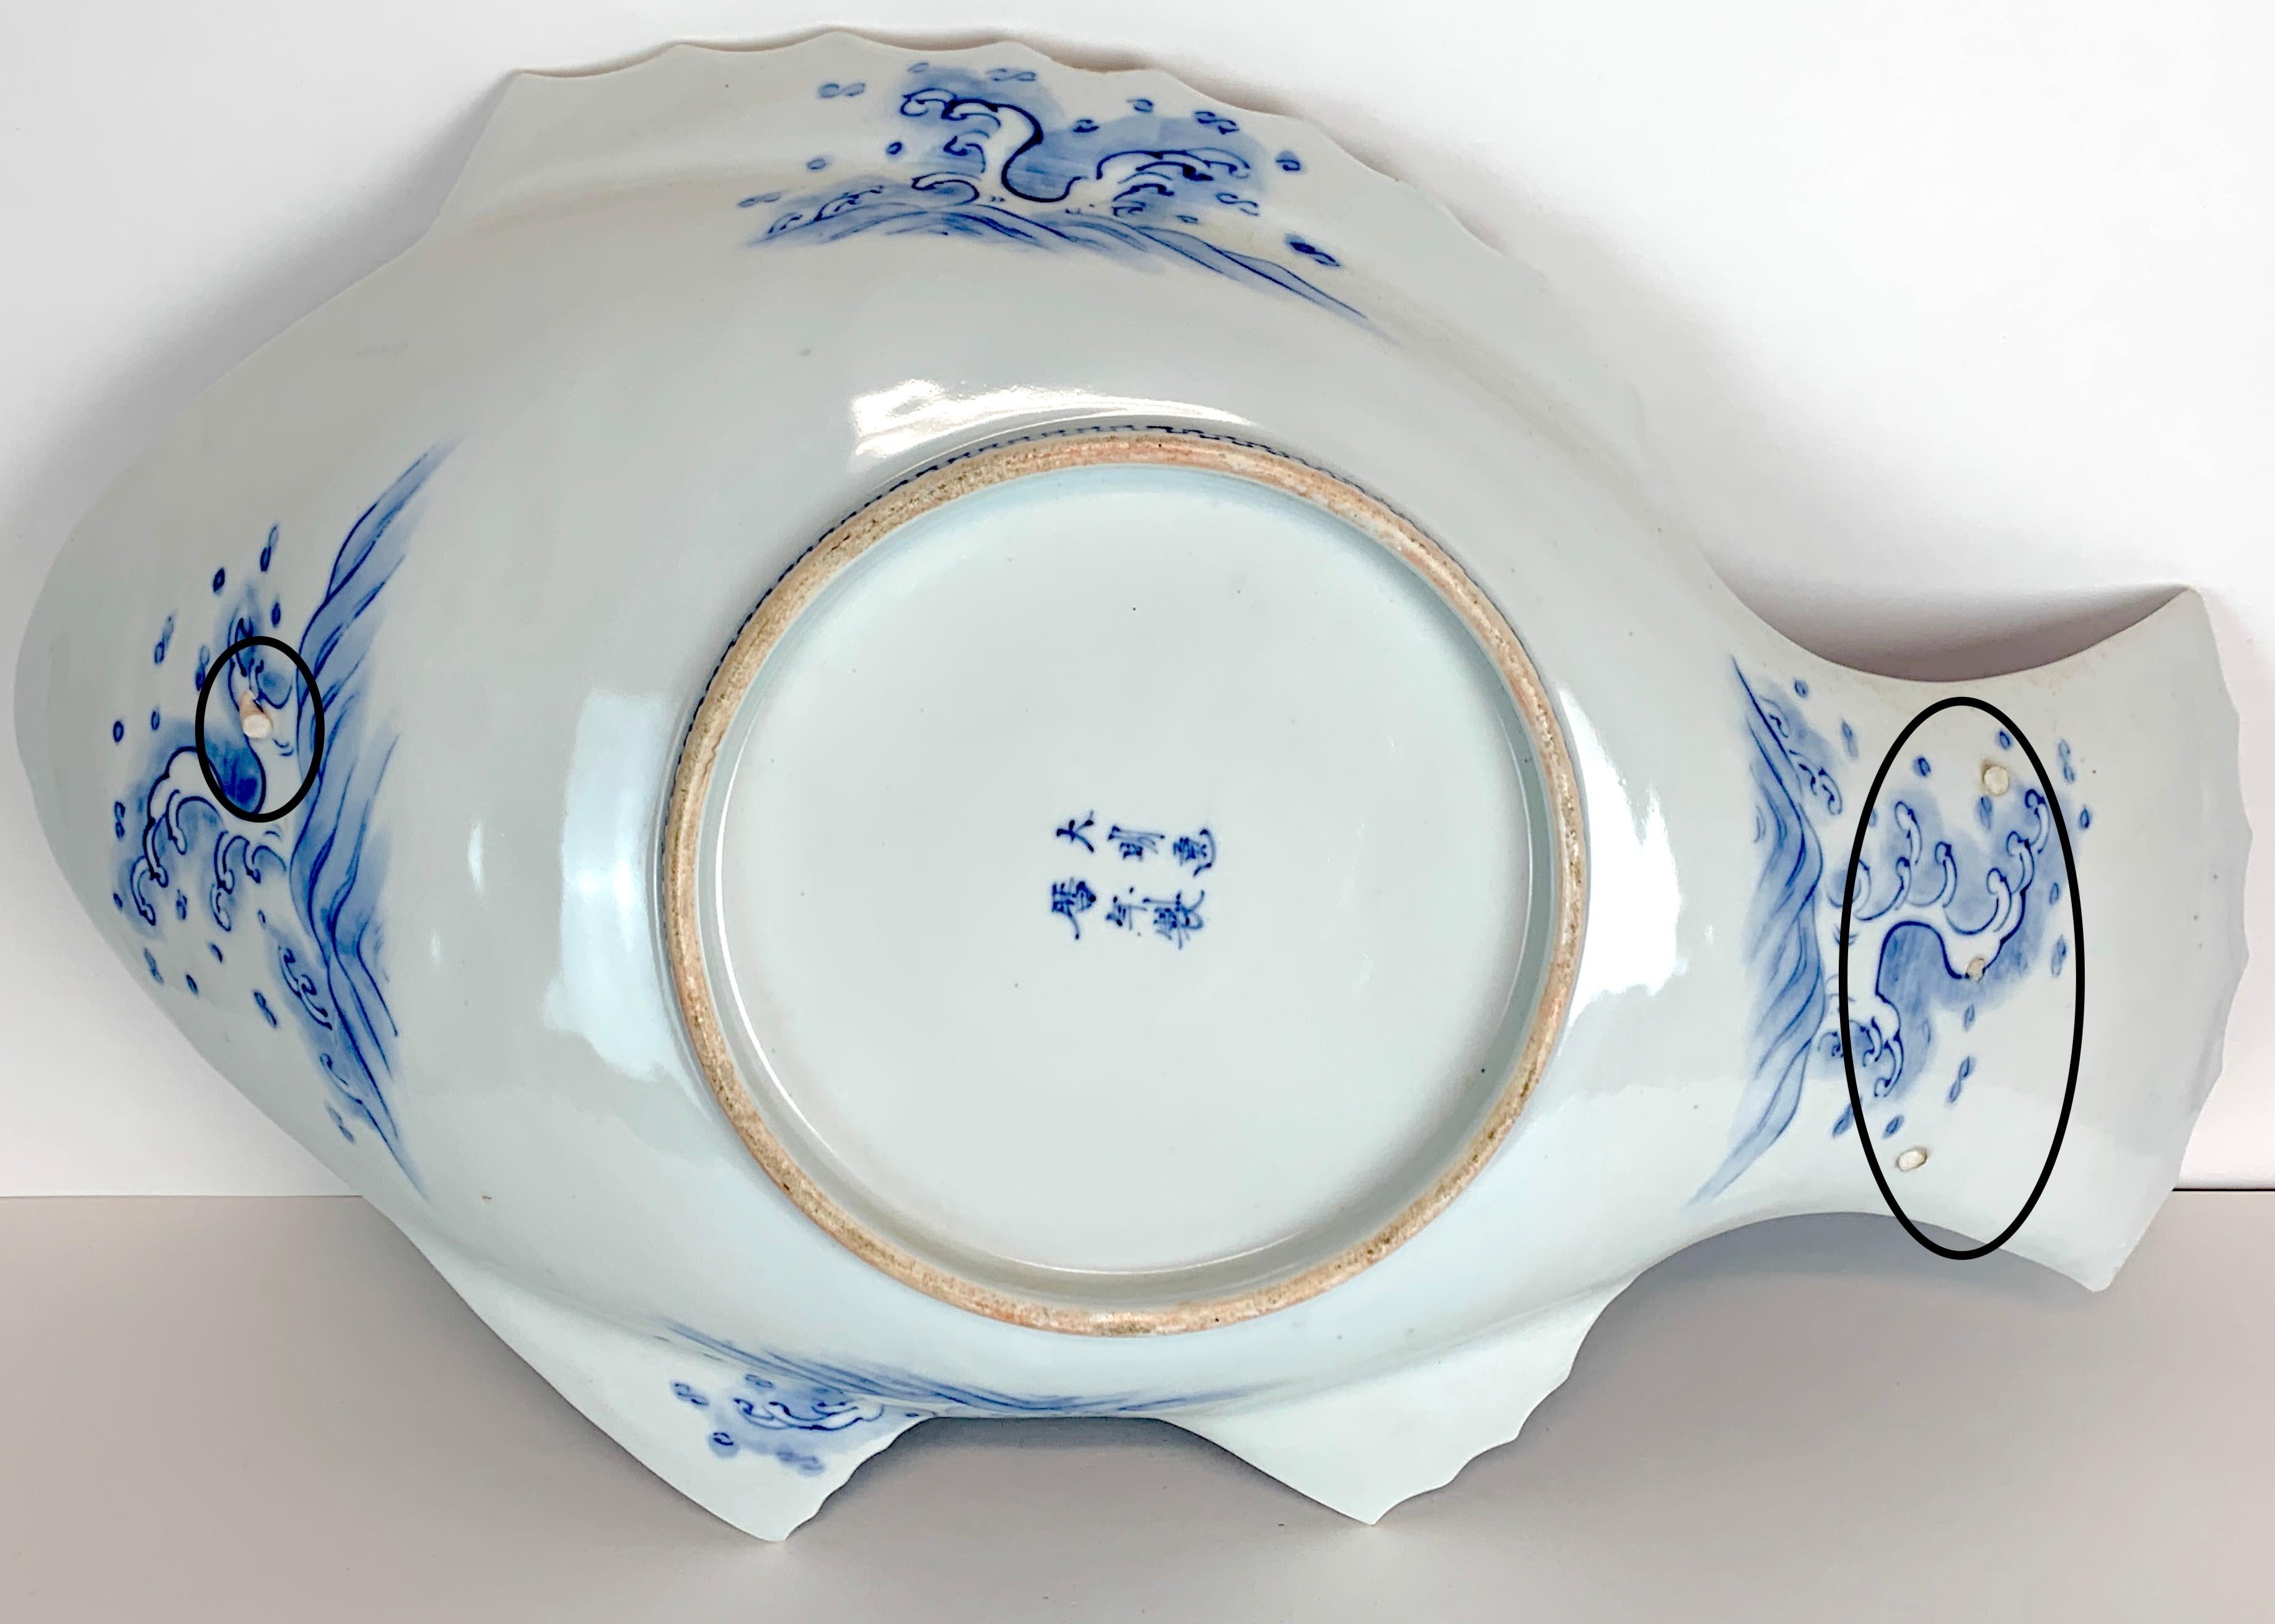 Large Meiji Imari Blue and White Fish Plate, by Fukagawa VII 3